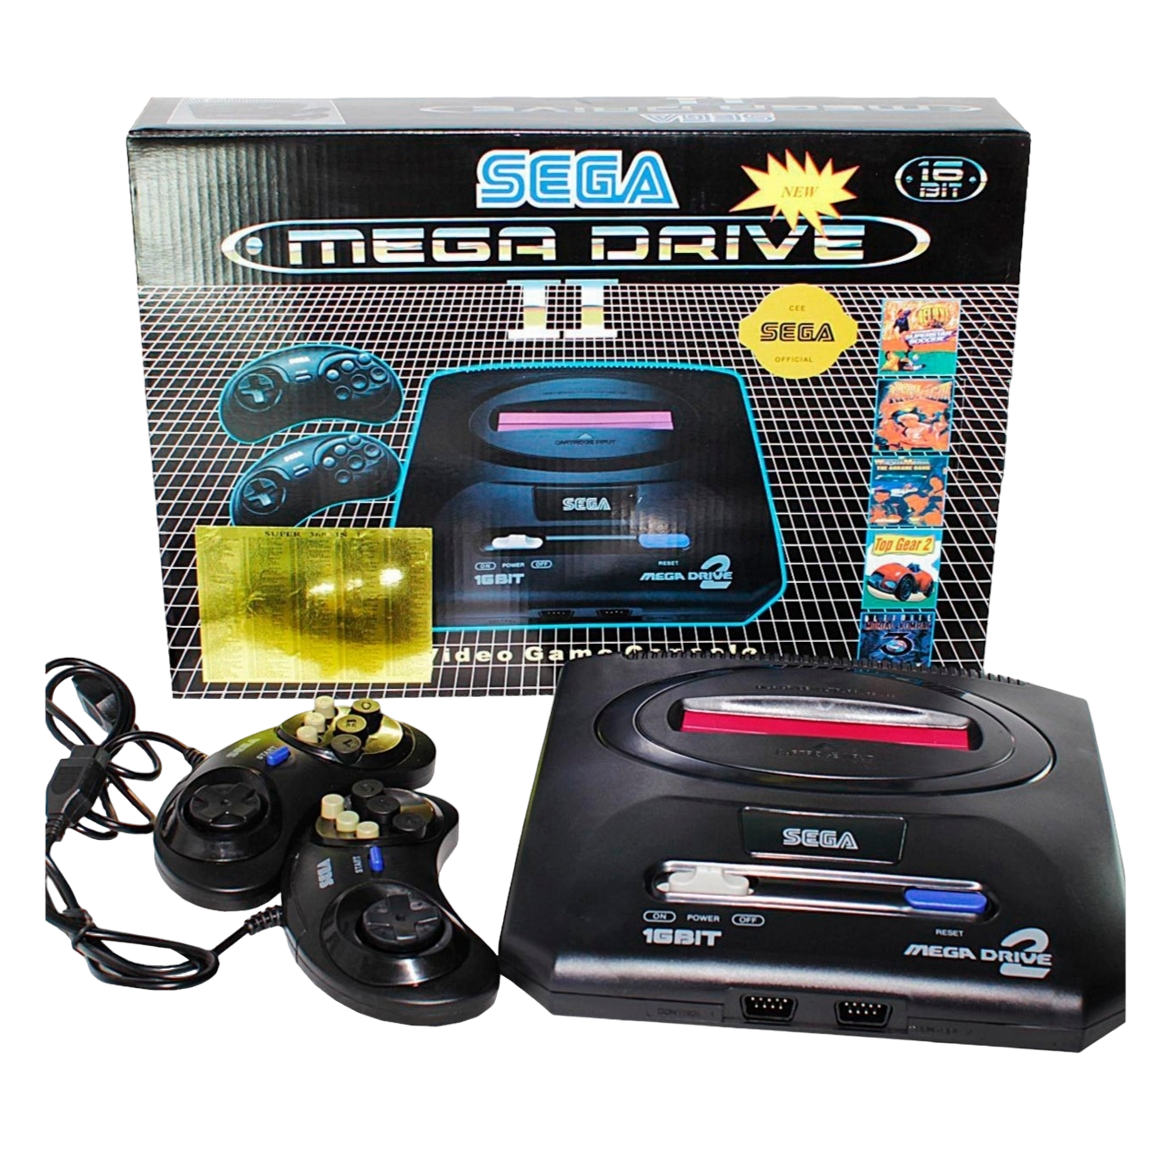 Игровая консоль, портативная игровая приставка "SEGA Mega Drive 2" с геймпадом, 252 игр, 16-bit